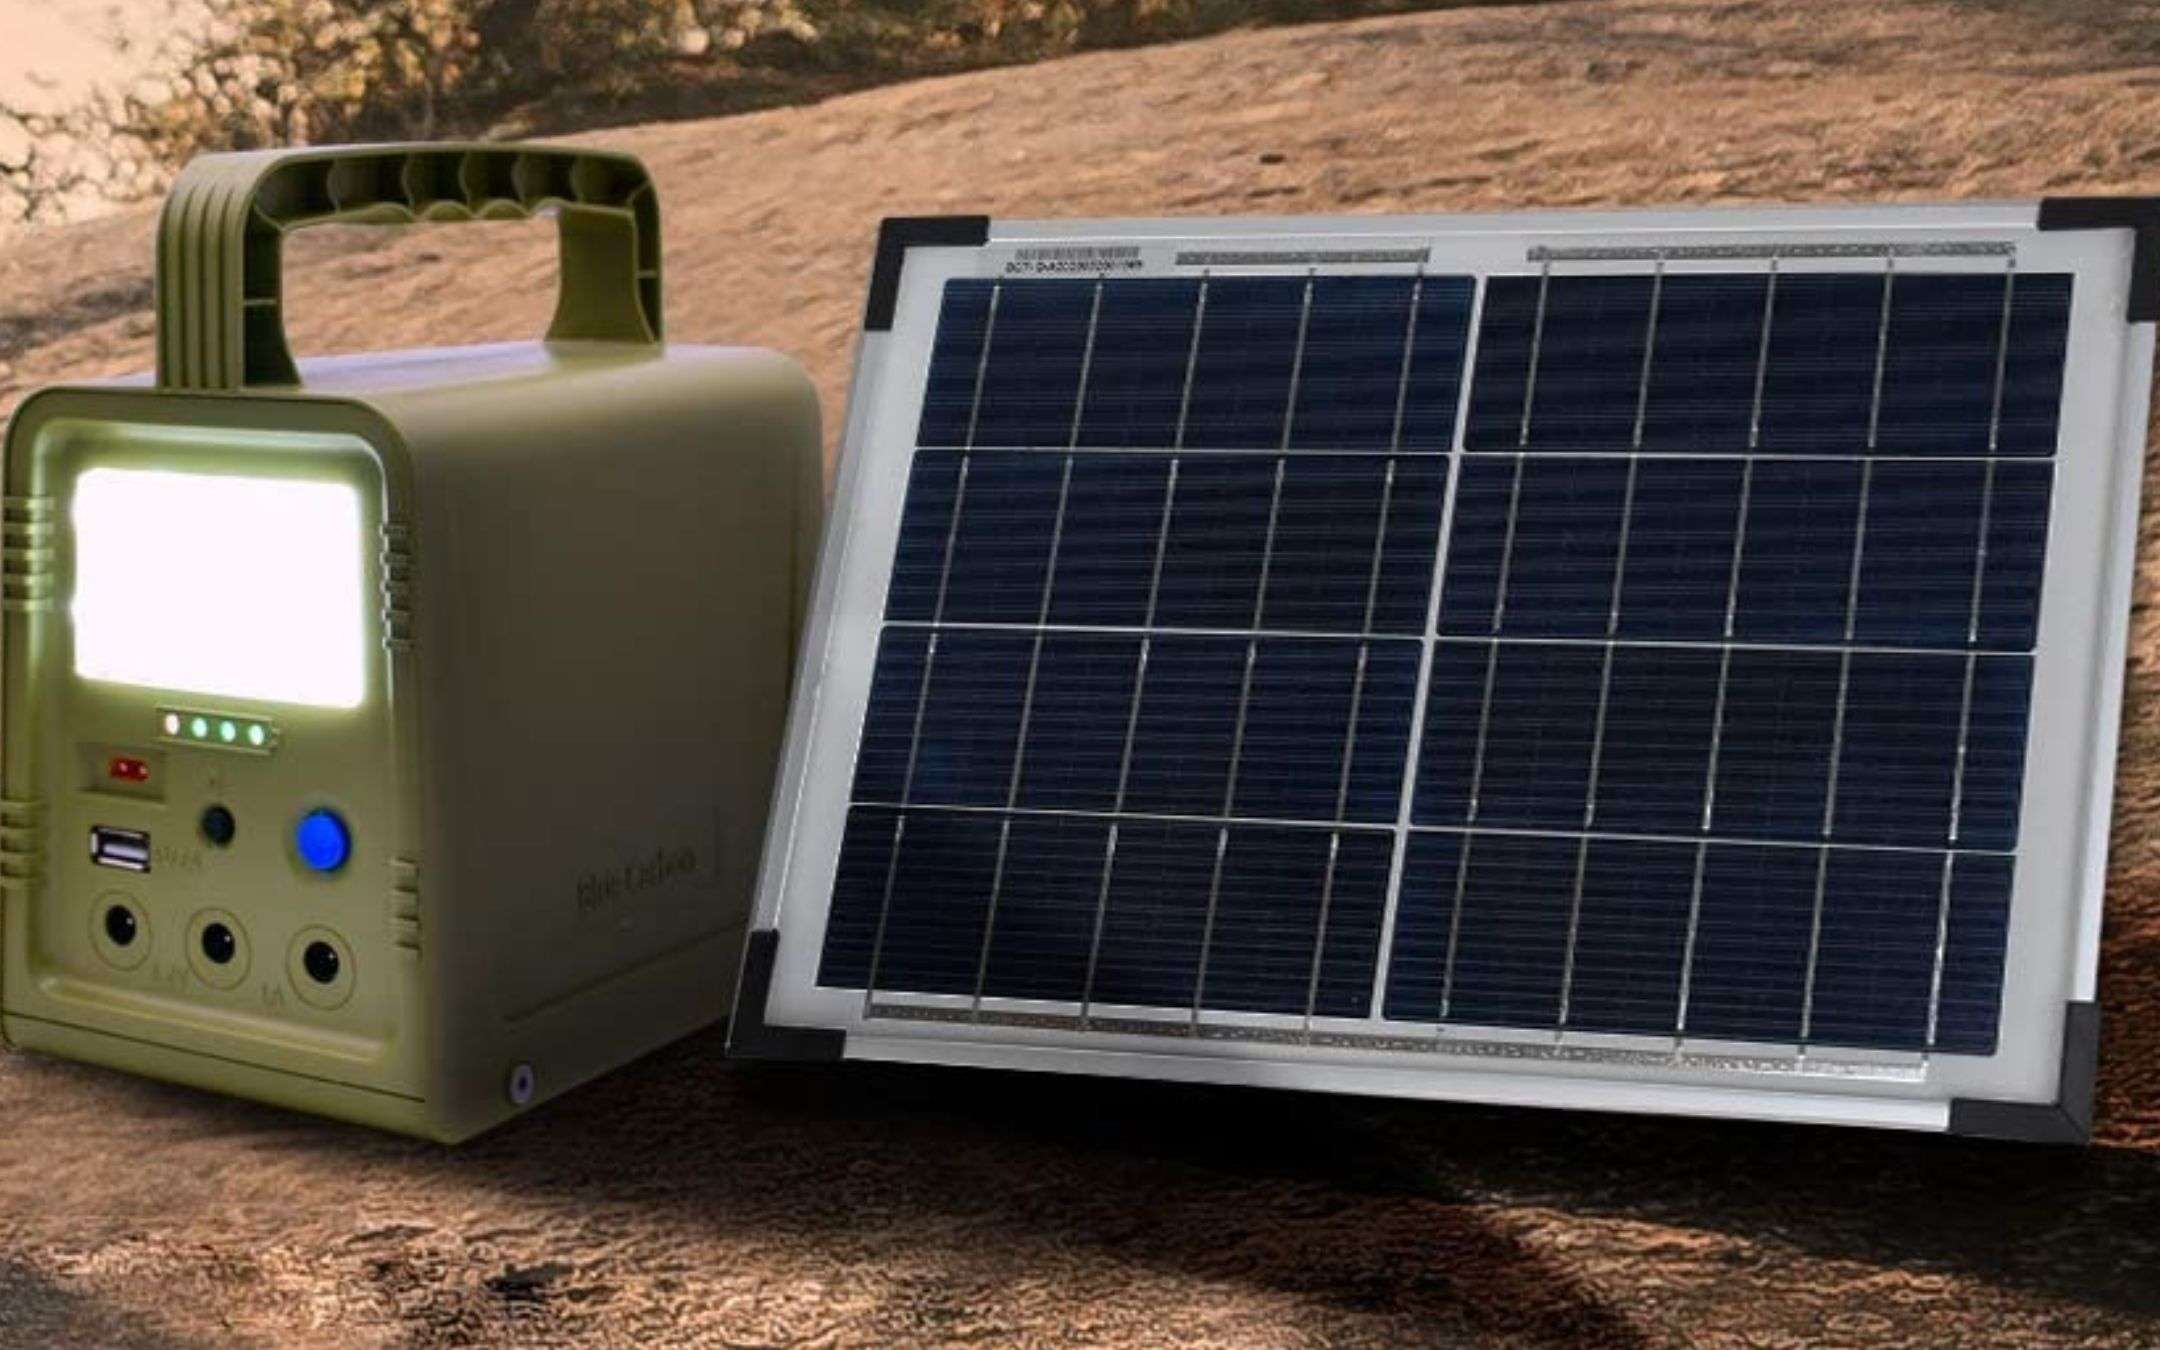 Mini impianto fotovoltaico con accumulo e porta USB a 76€: prezzaccio